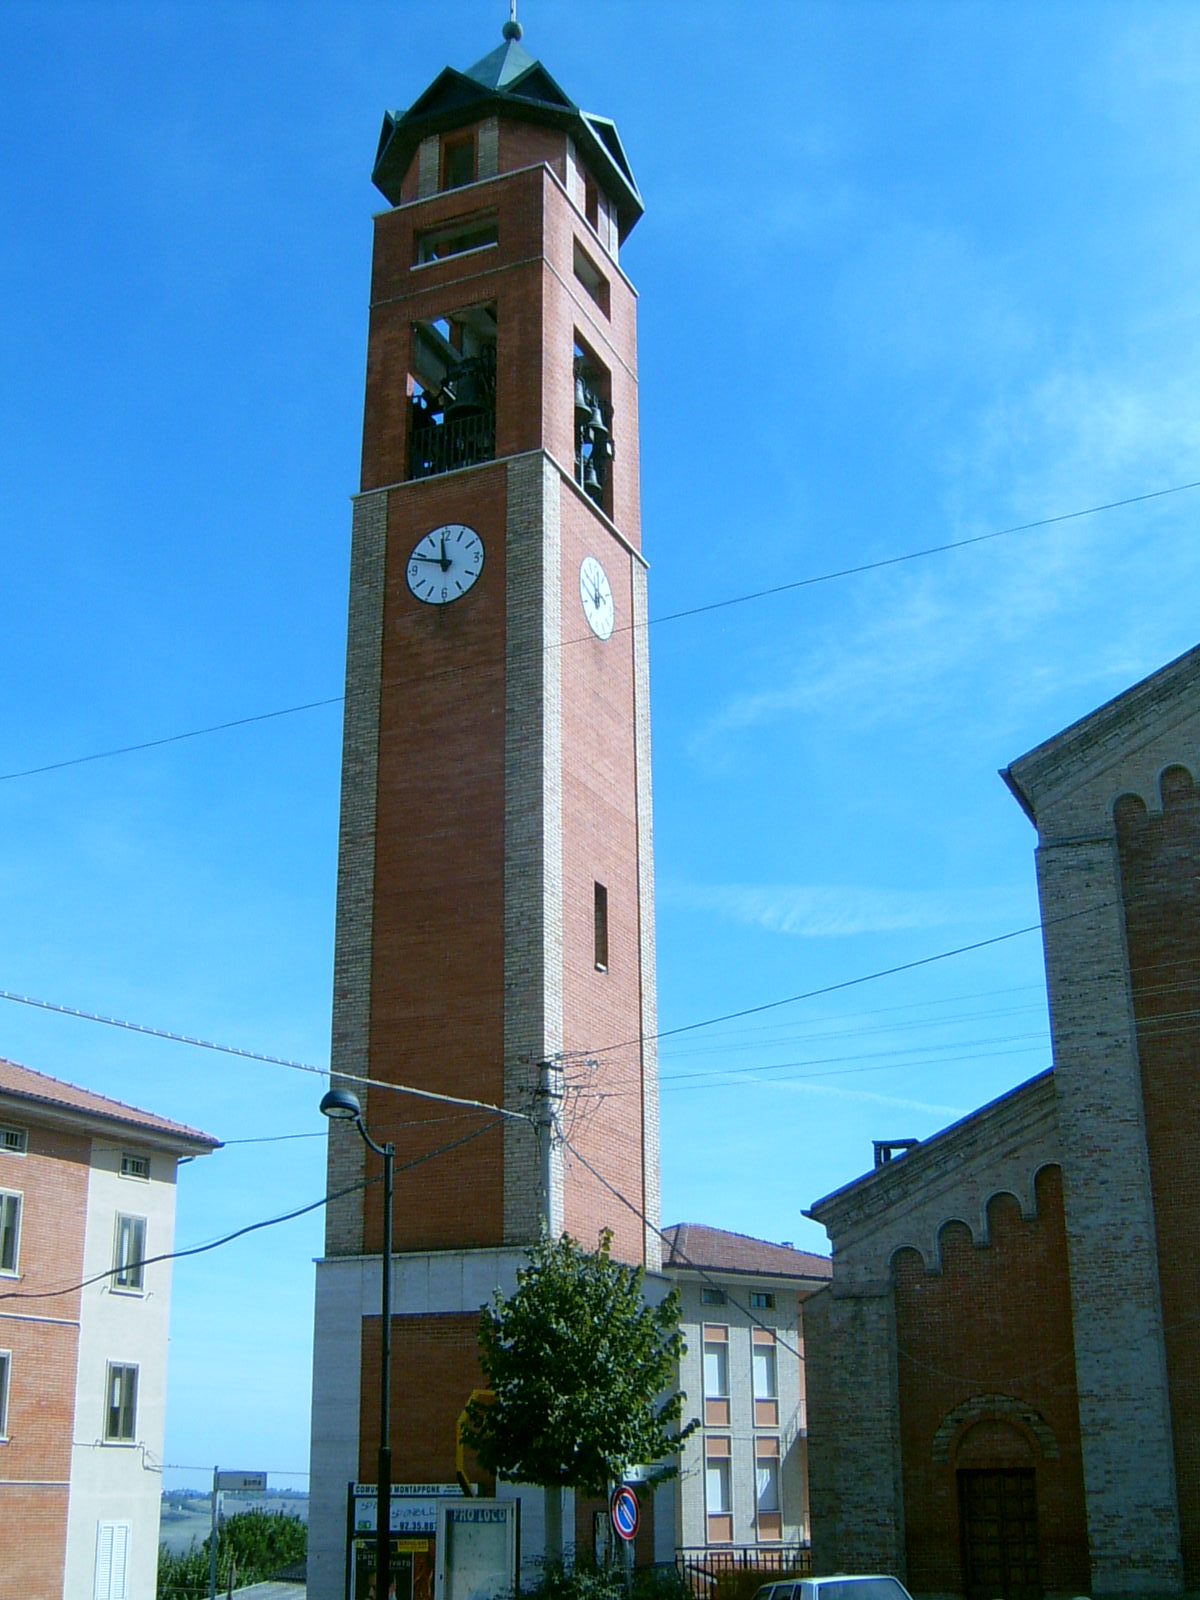 Campanile della Chiesa di S. Maria e S. Giorgio (campanile, parrocchiale) - Montappone (AP) 